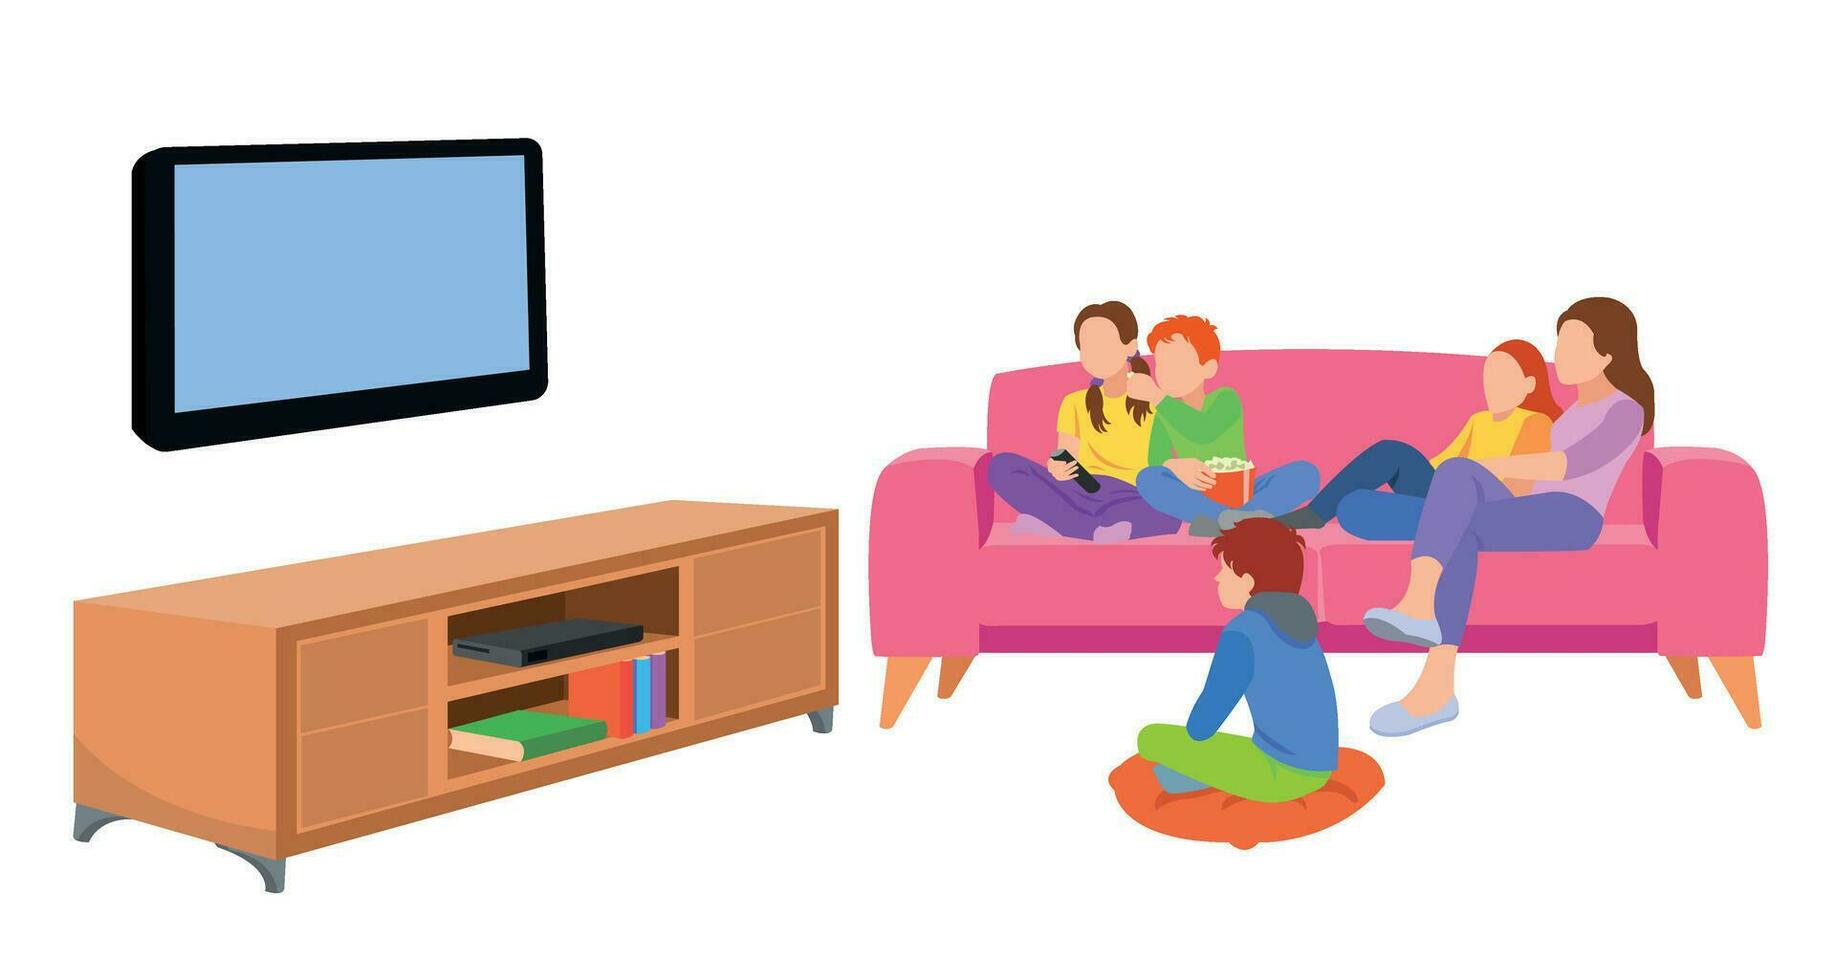 famiglia felice guardando la televisione insieme in soggiorno. illustrazione di famiglia in stile cartone animato vettore